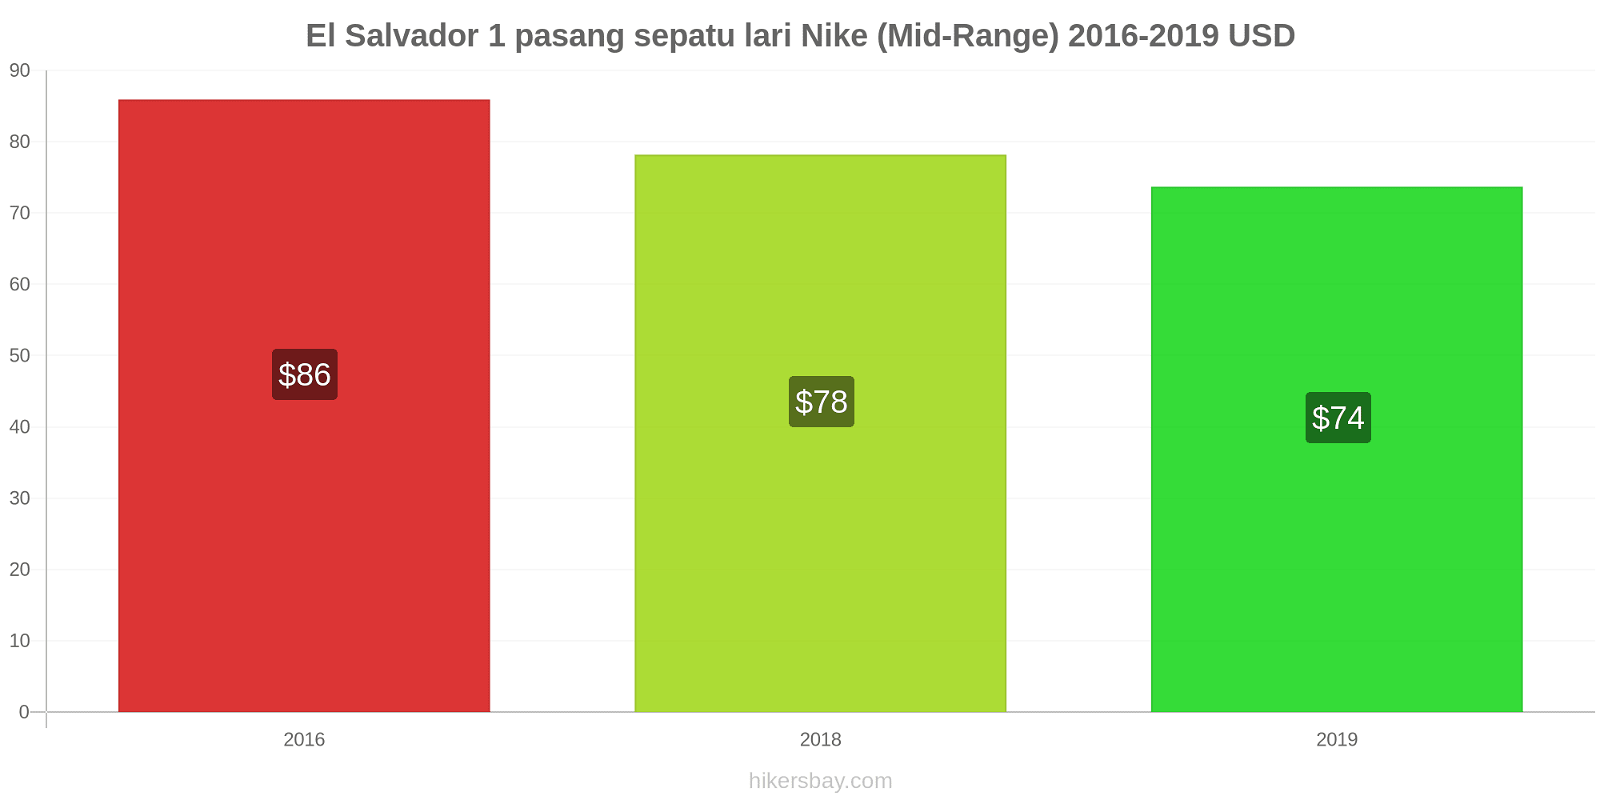 El Salvador perubahan harga 1 pasang sepatu lari Nike (Mid-Range) hikersbay.com